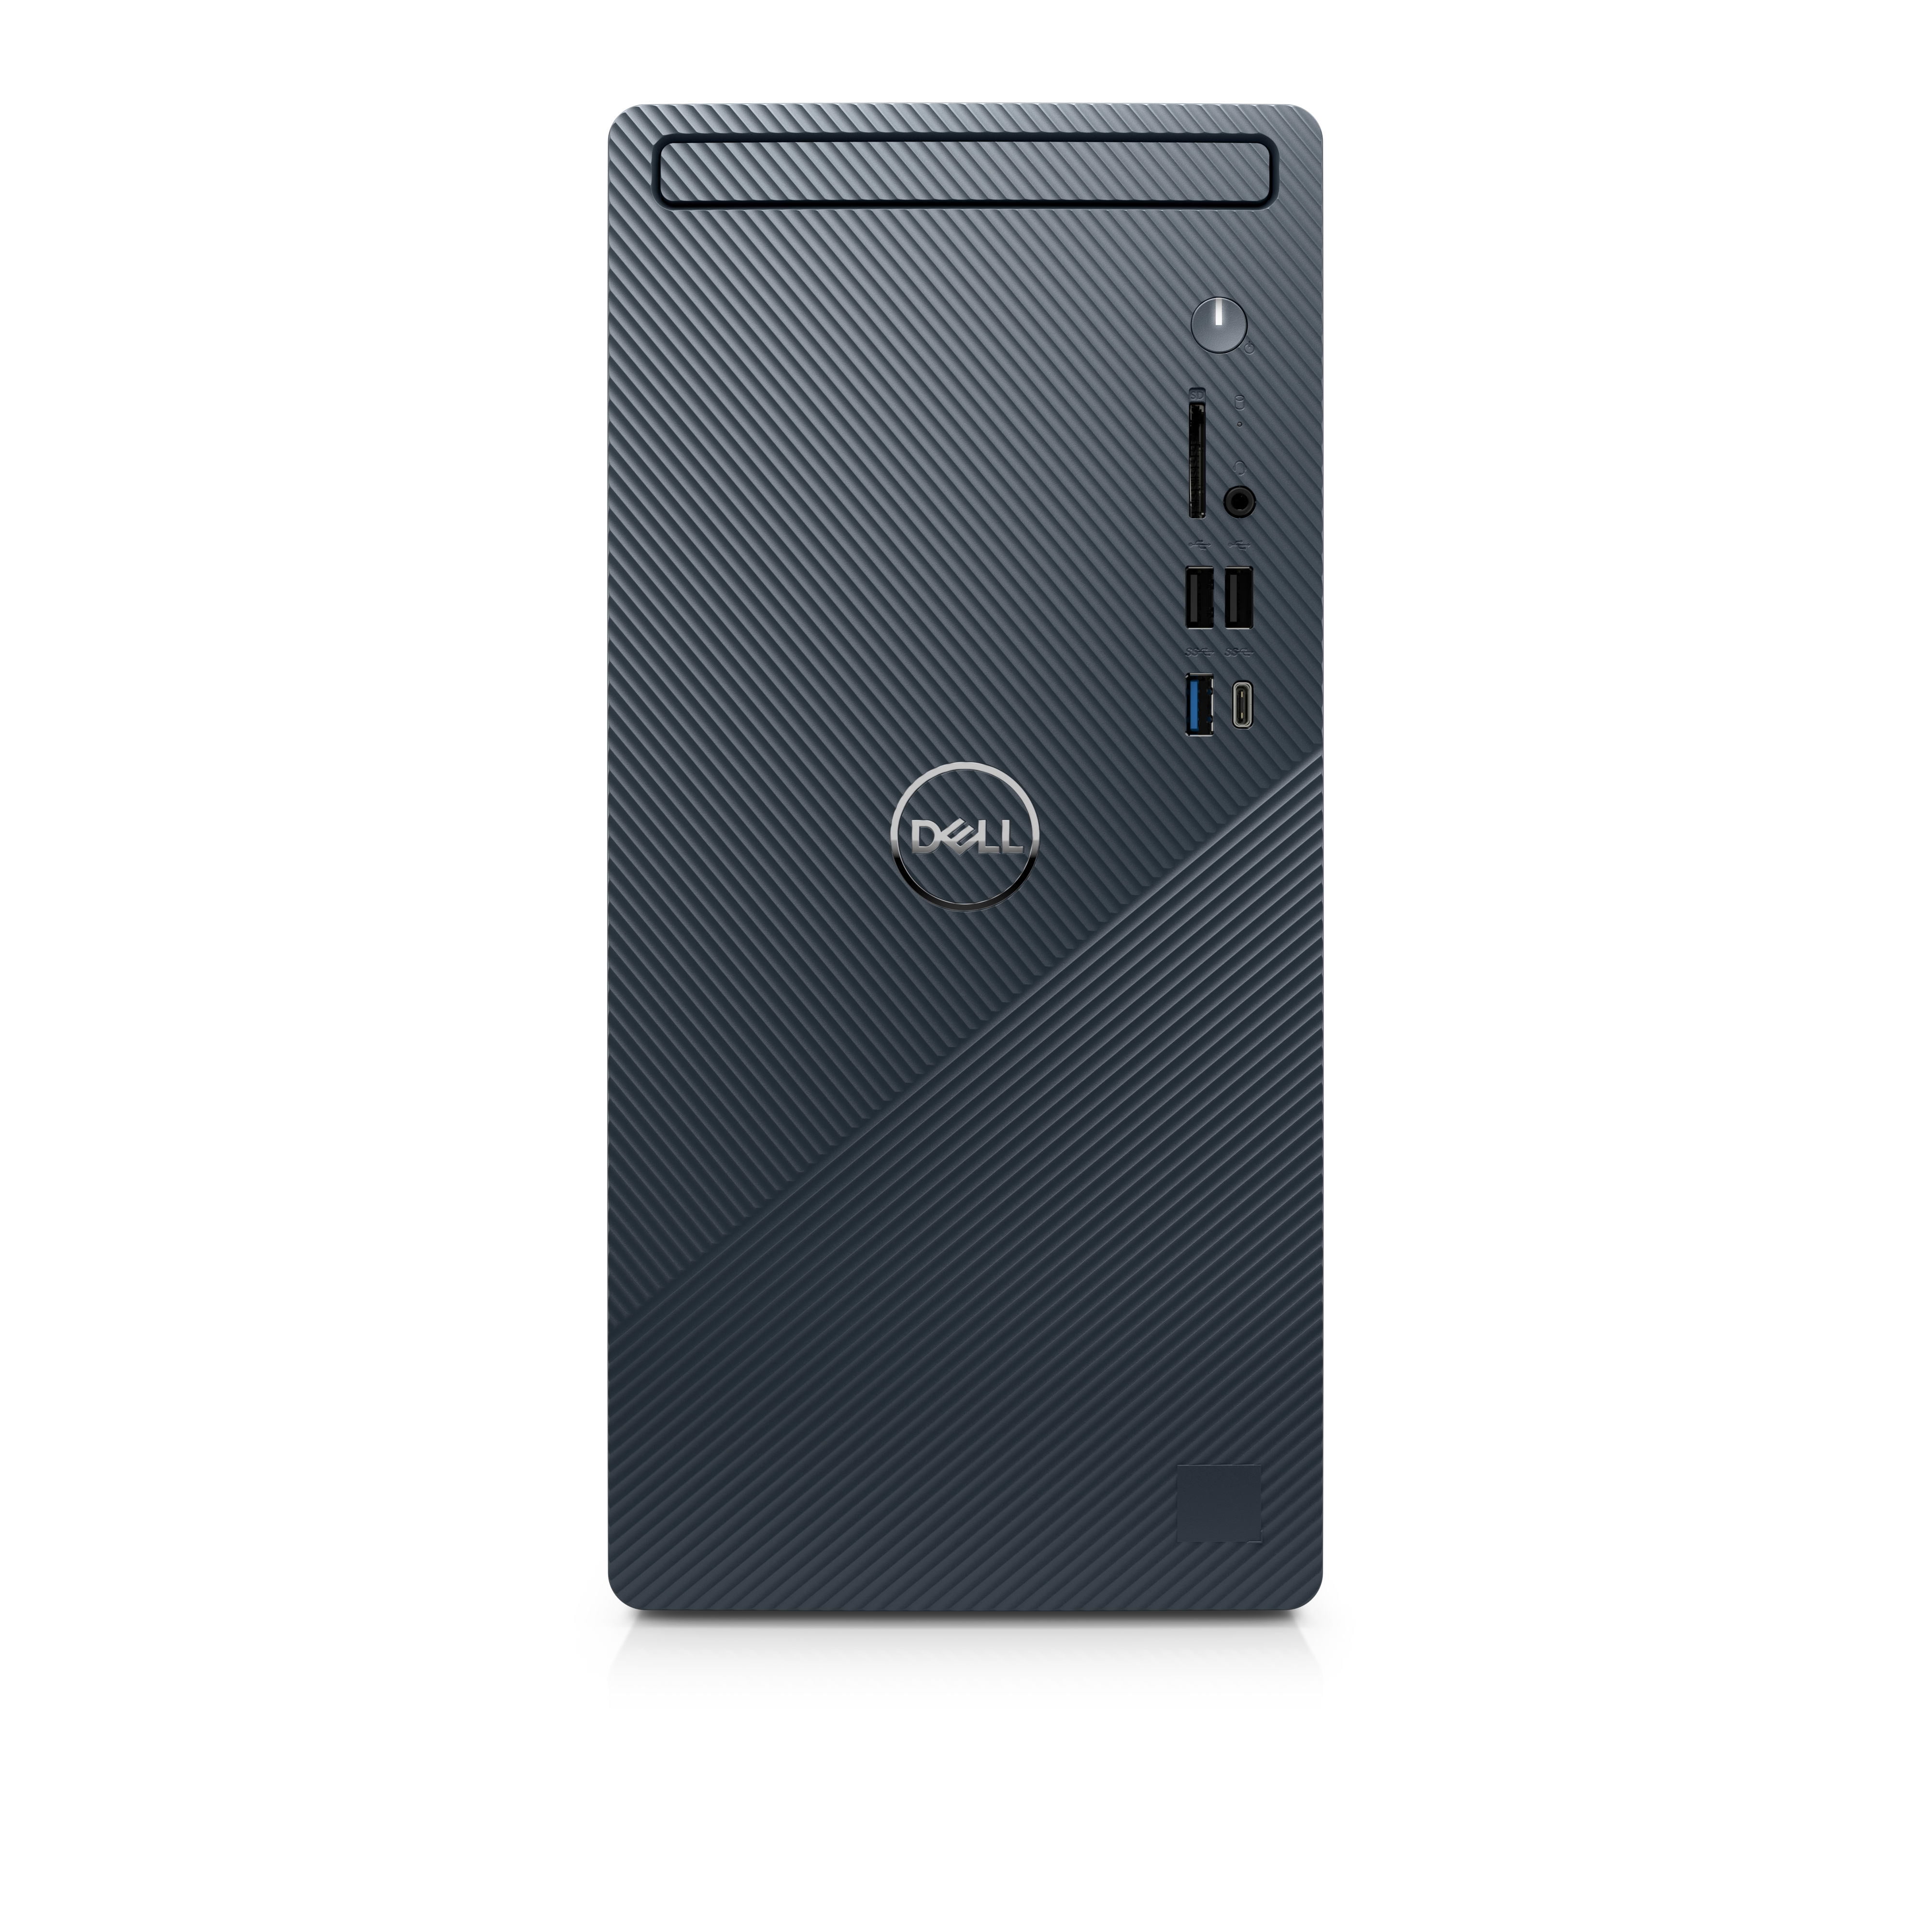 Dell Inspiron 3910 Desktop (2022) | Core i7 - 512GB SSD - 16GB RAM ...